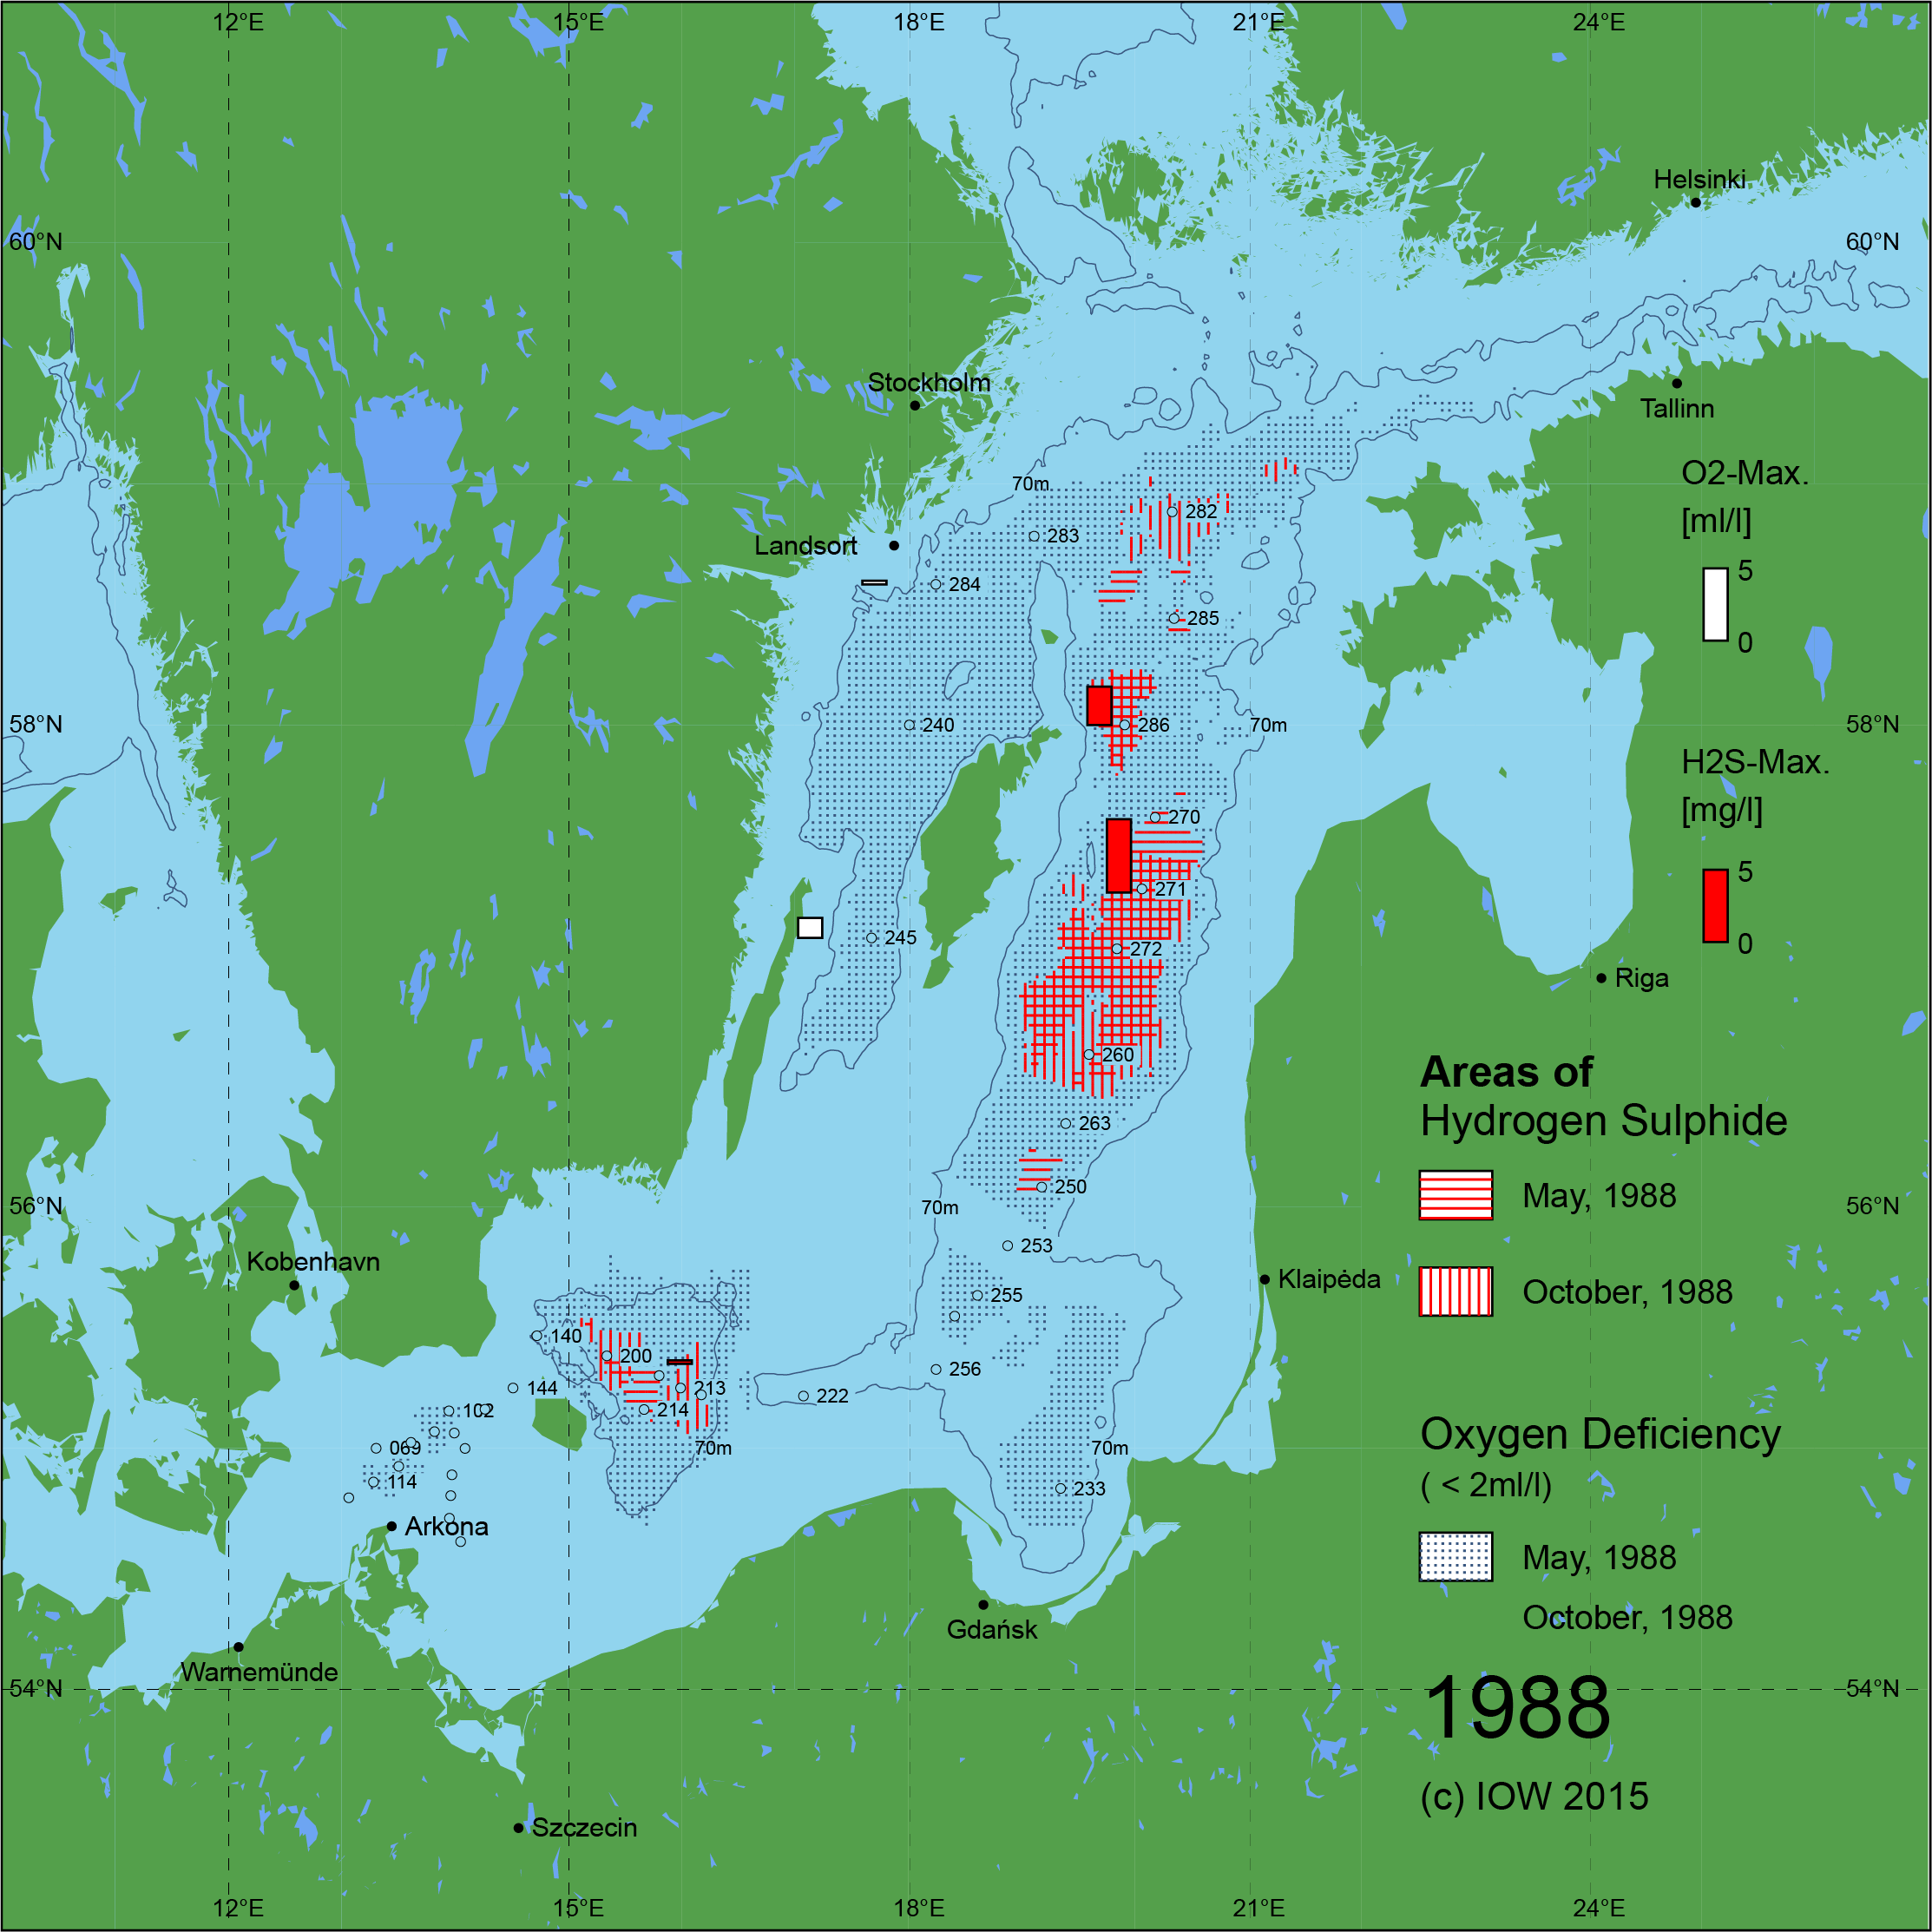 Sauerstoffarme und sauerstofffreie Gebiete in der Ostsee - 1988